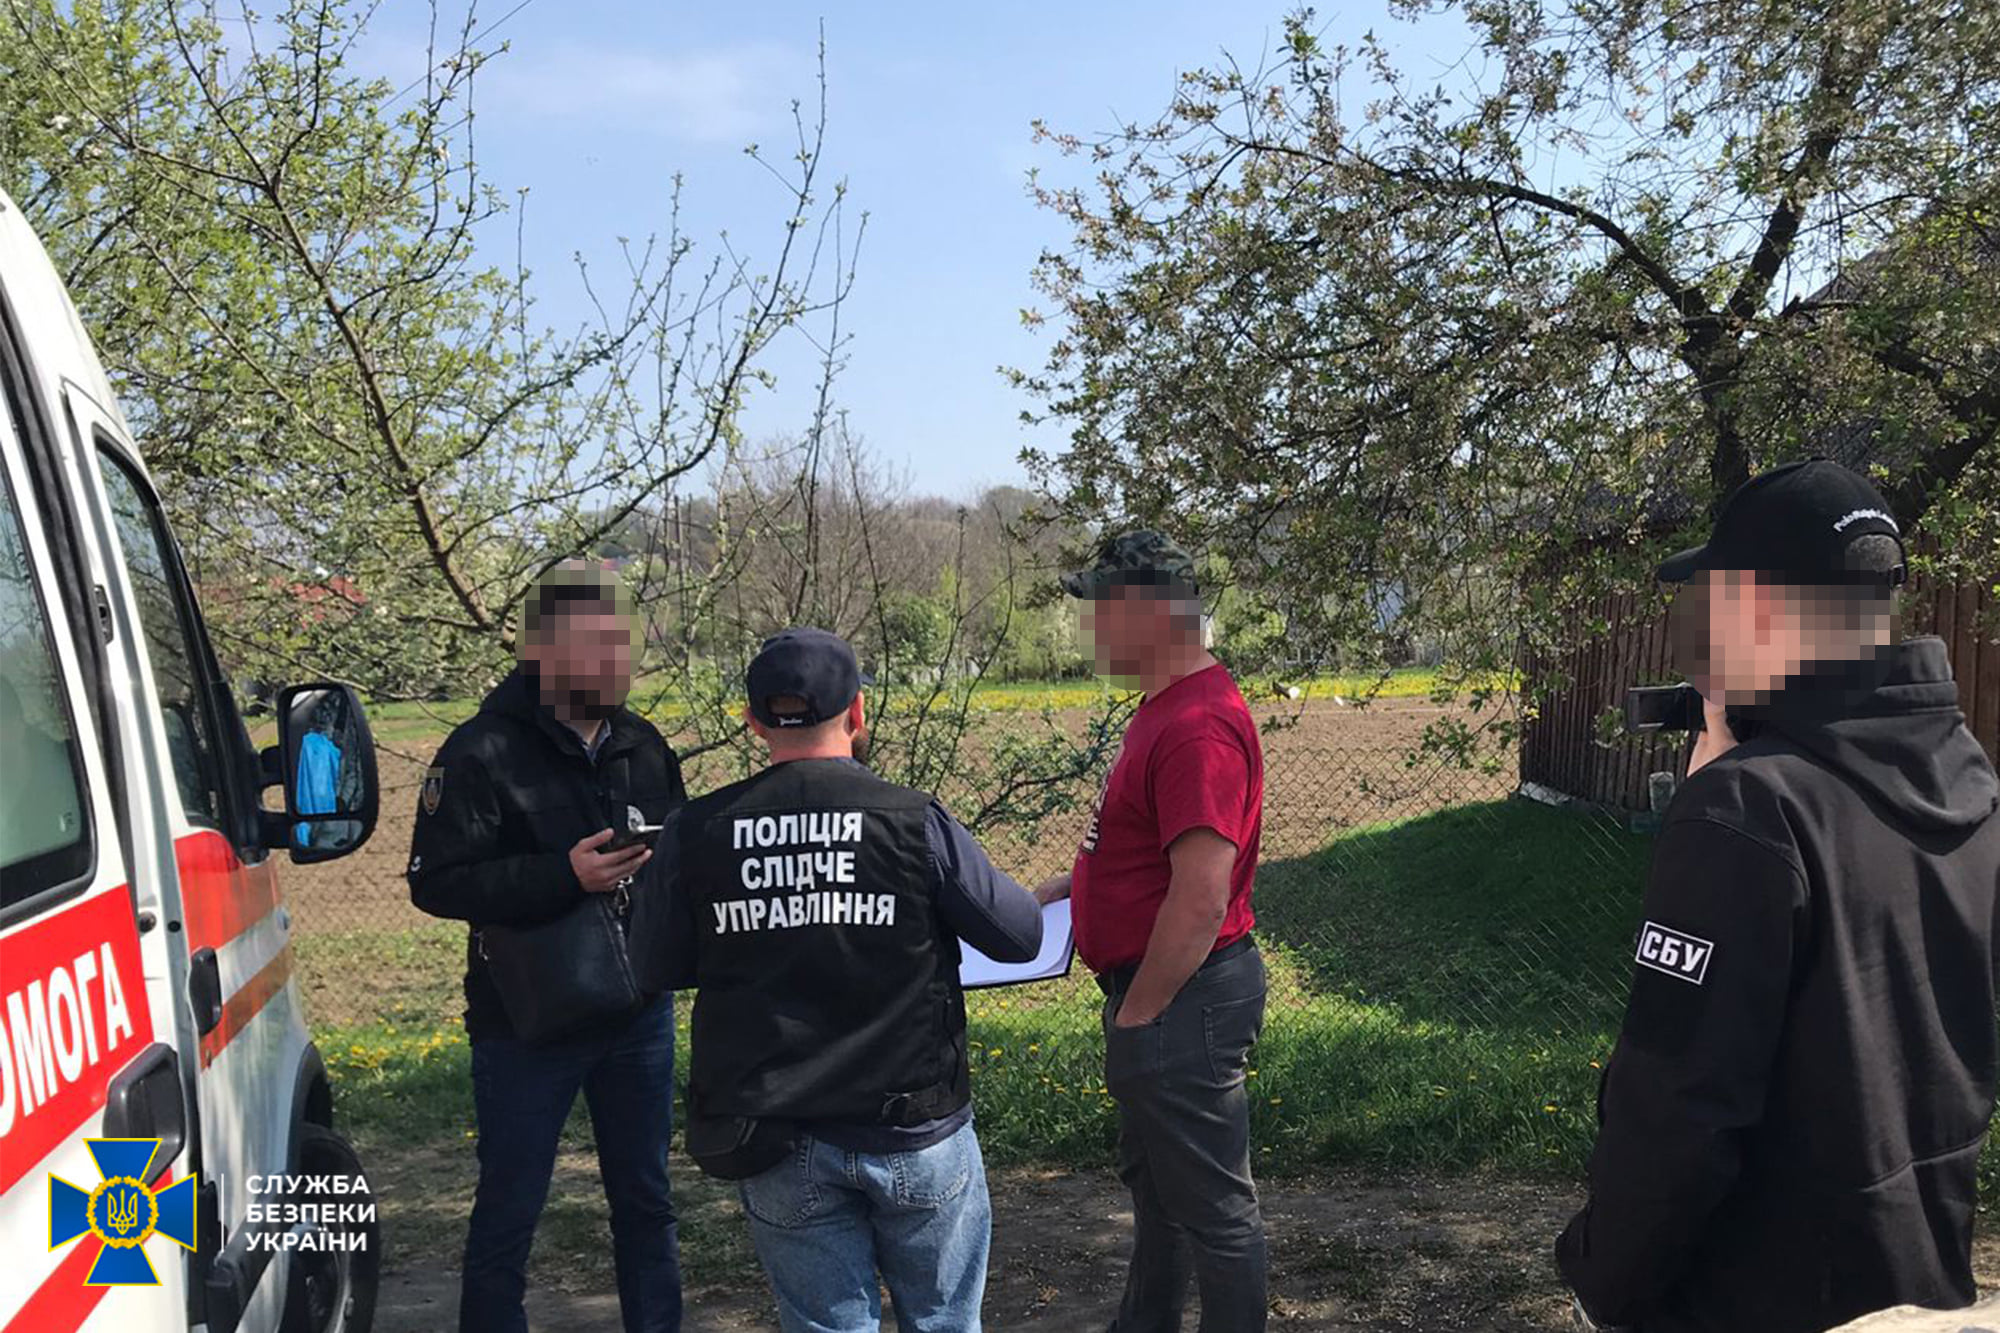 Підозрюється у привласненні гуманітарної допомоги: у Чернівцях під заставу вийшов гендиректор обласної лікарні